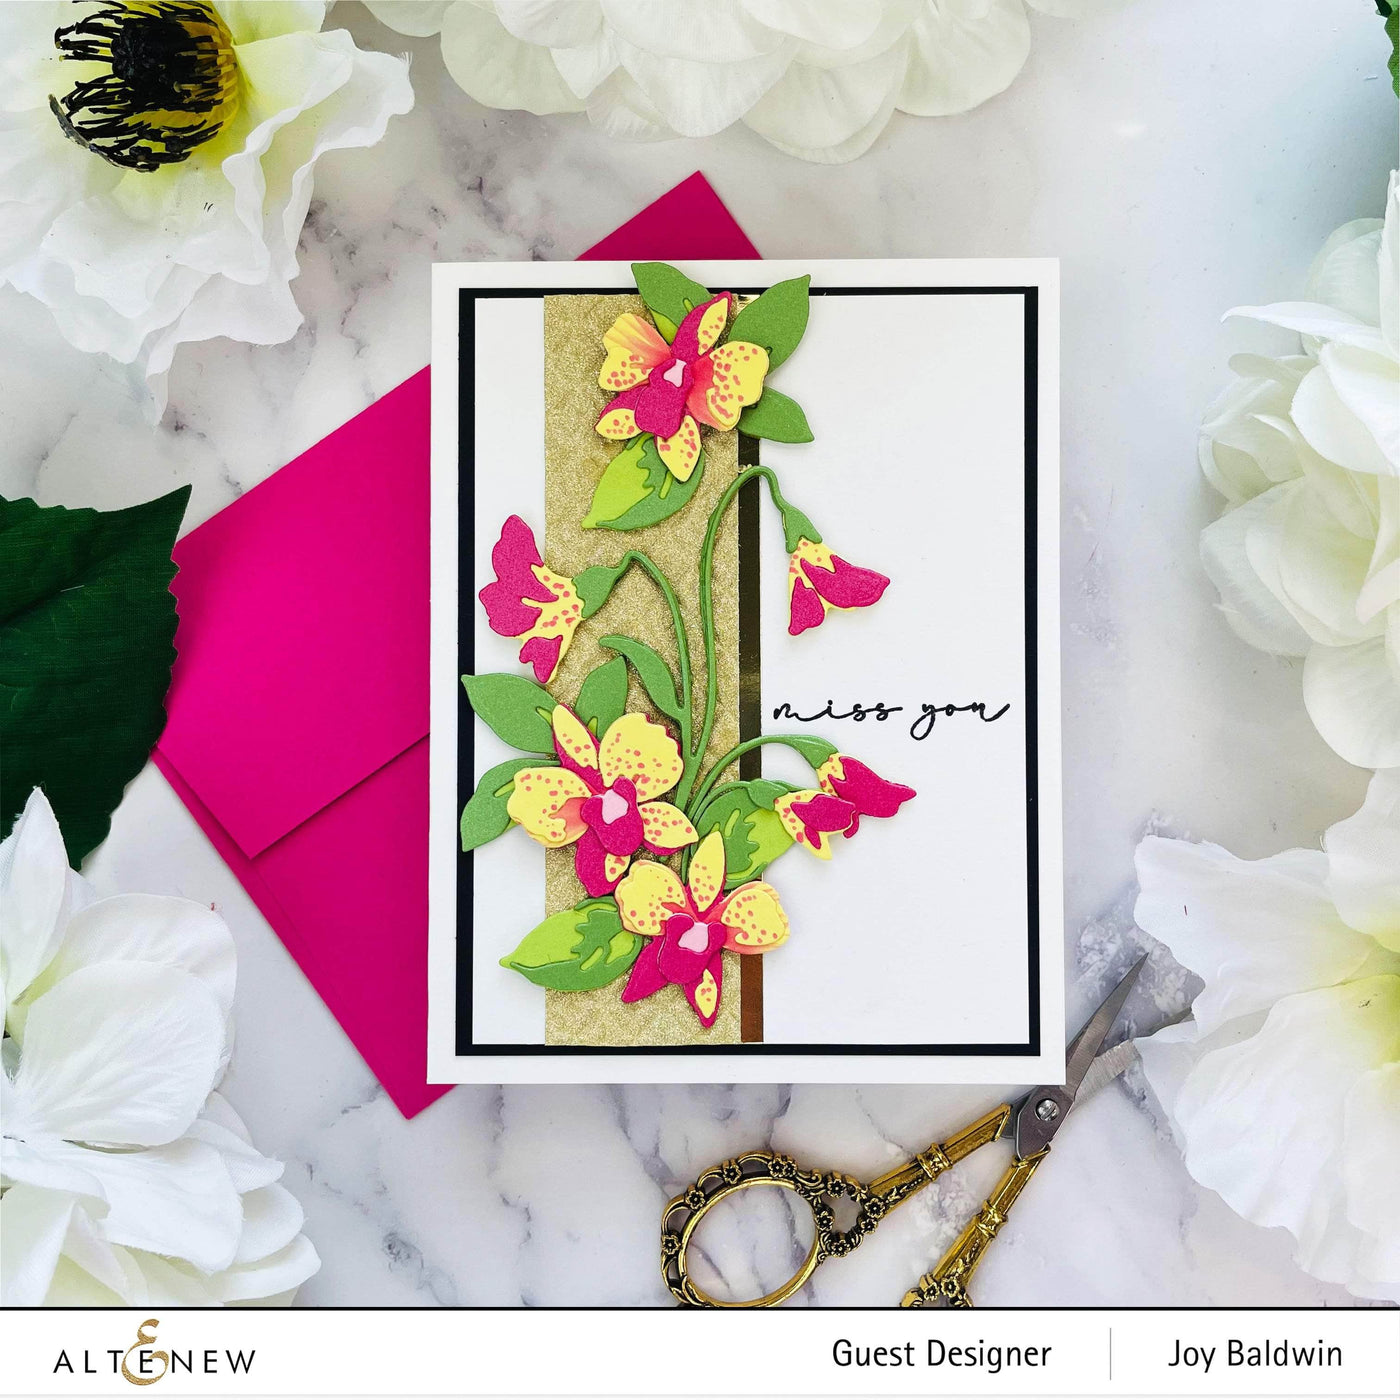 Die & Paper Bundle Craft-A-Flower: Dendrobium Orchid Layering Die Set & Gradient Cardstock Bundle